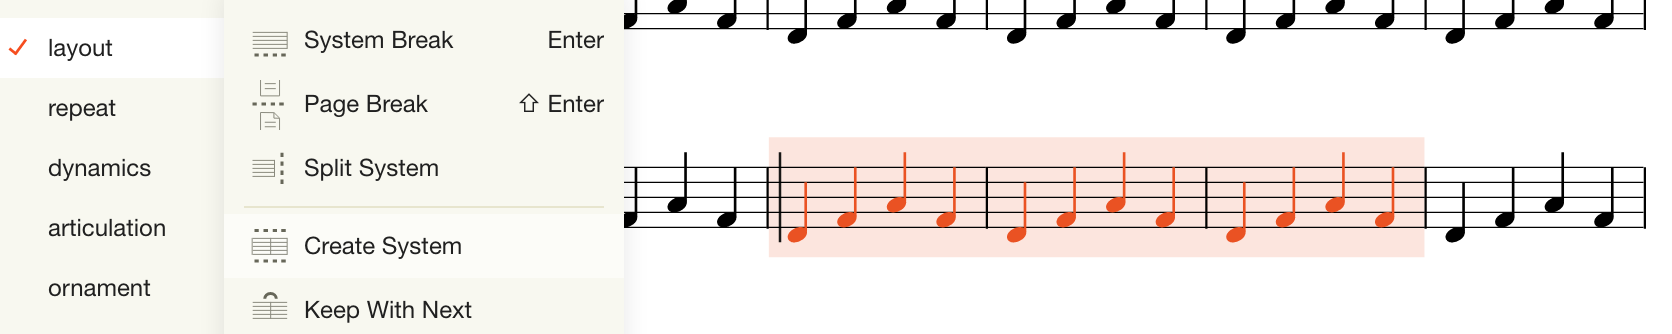 Music Notation User Guide Noteflight Music Notation Software